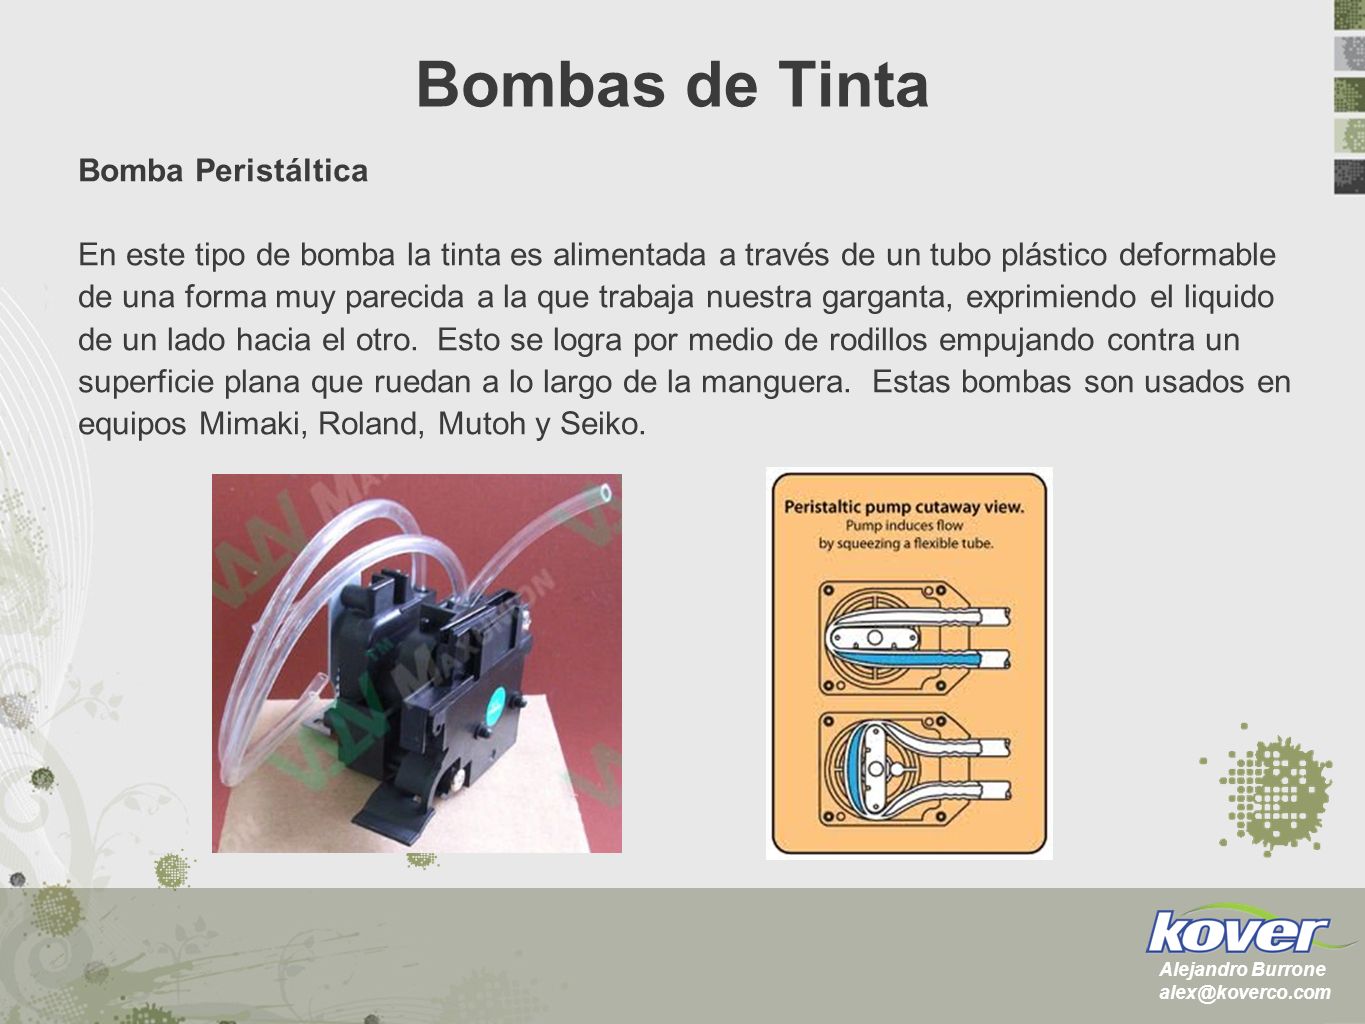 Bombas de Tinta Bomba Peristáltica